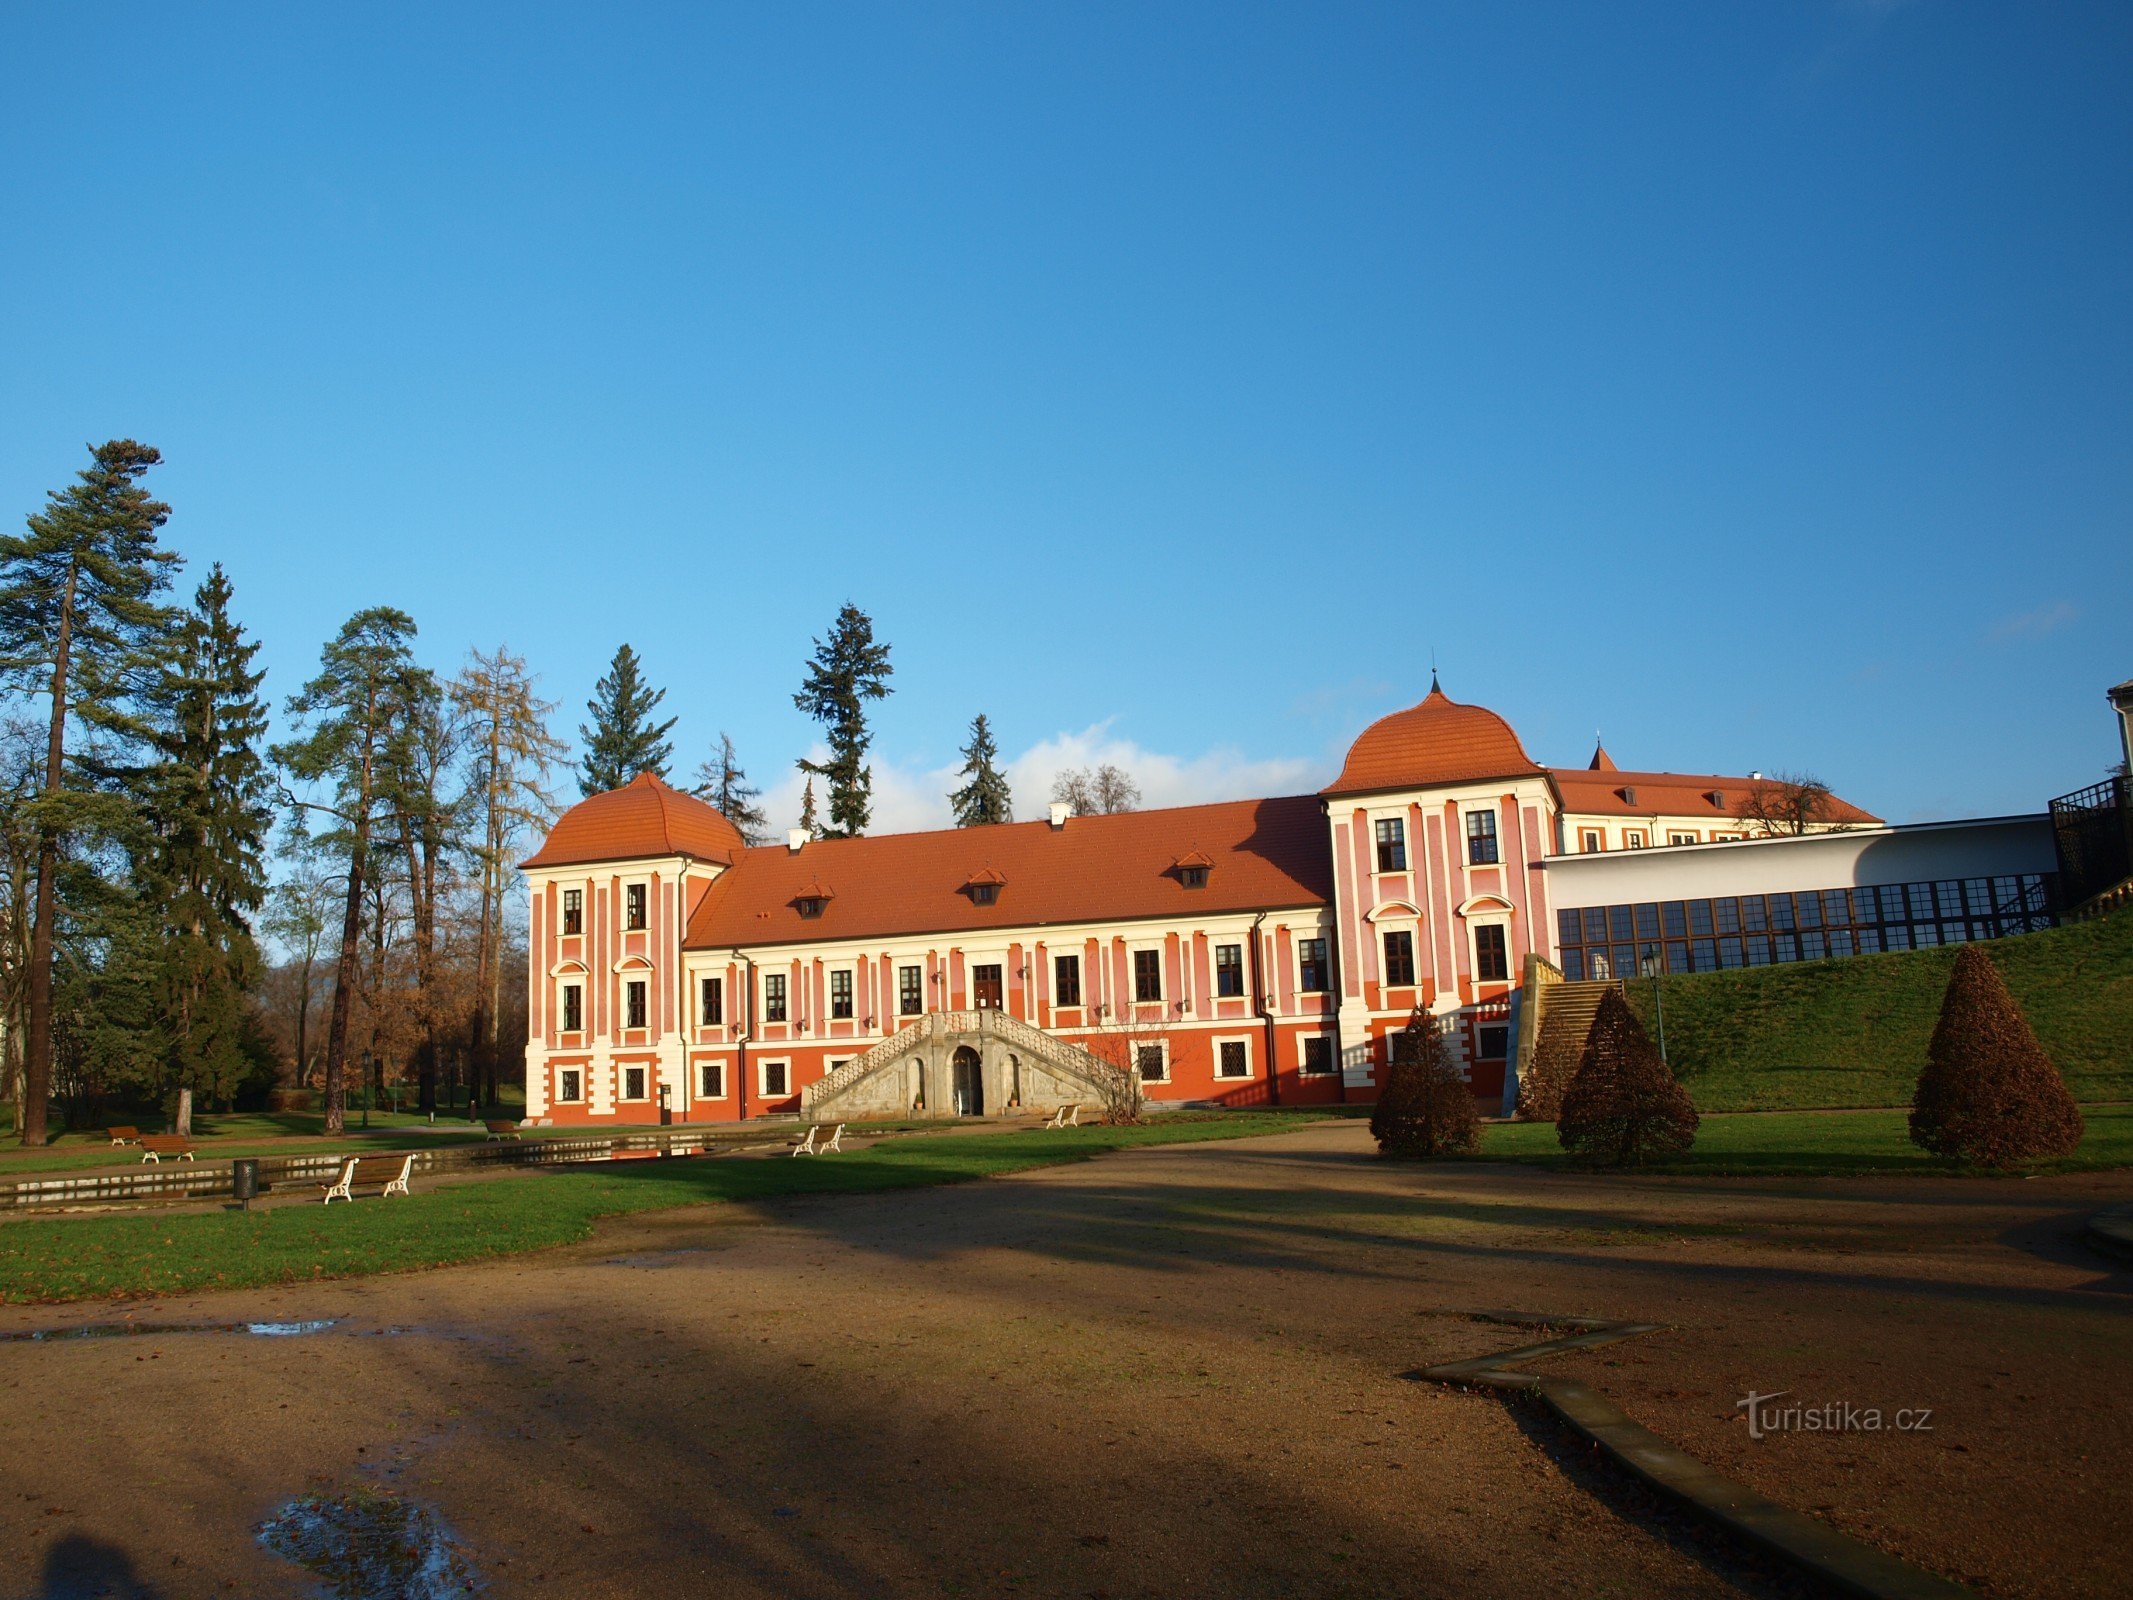 Castelo Ostrov nad Ohří - Palácio dos Príncipes